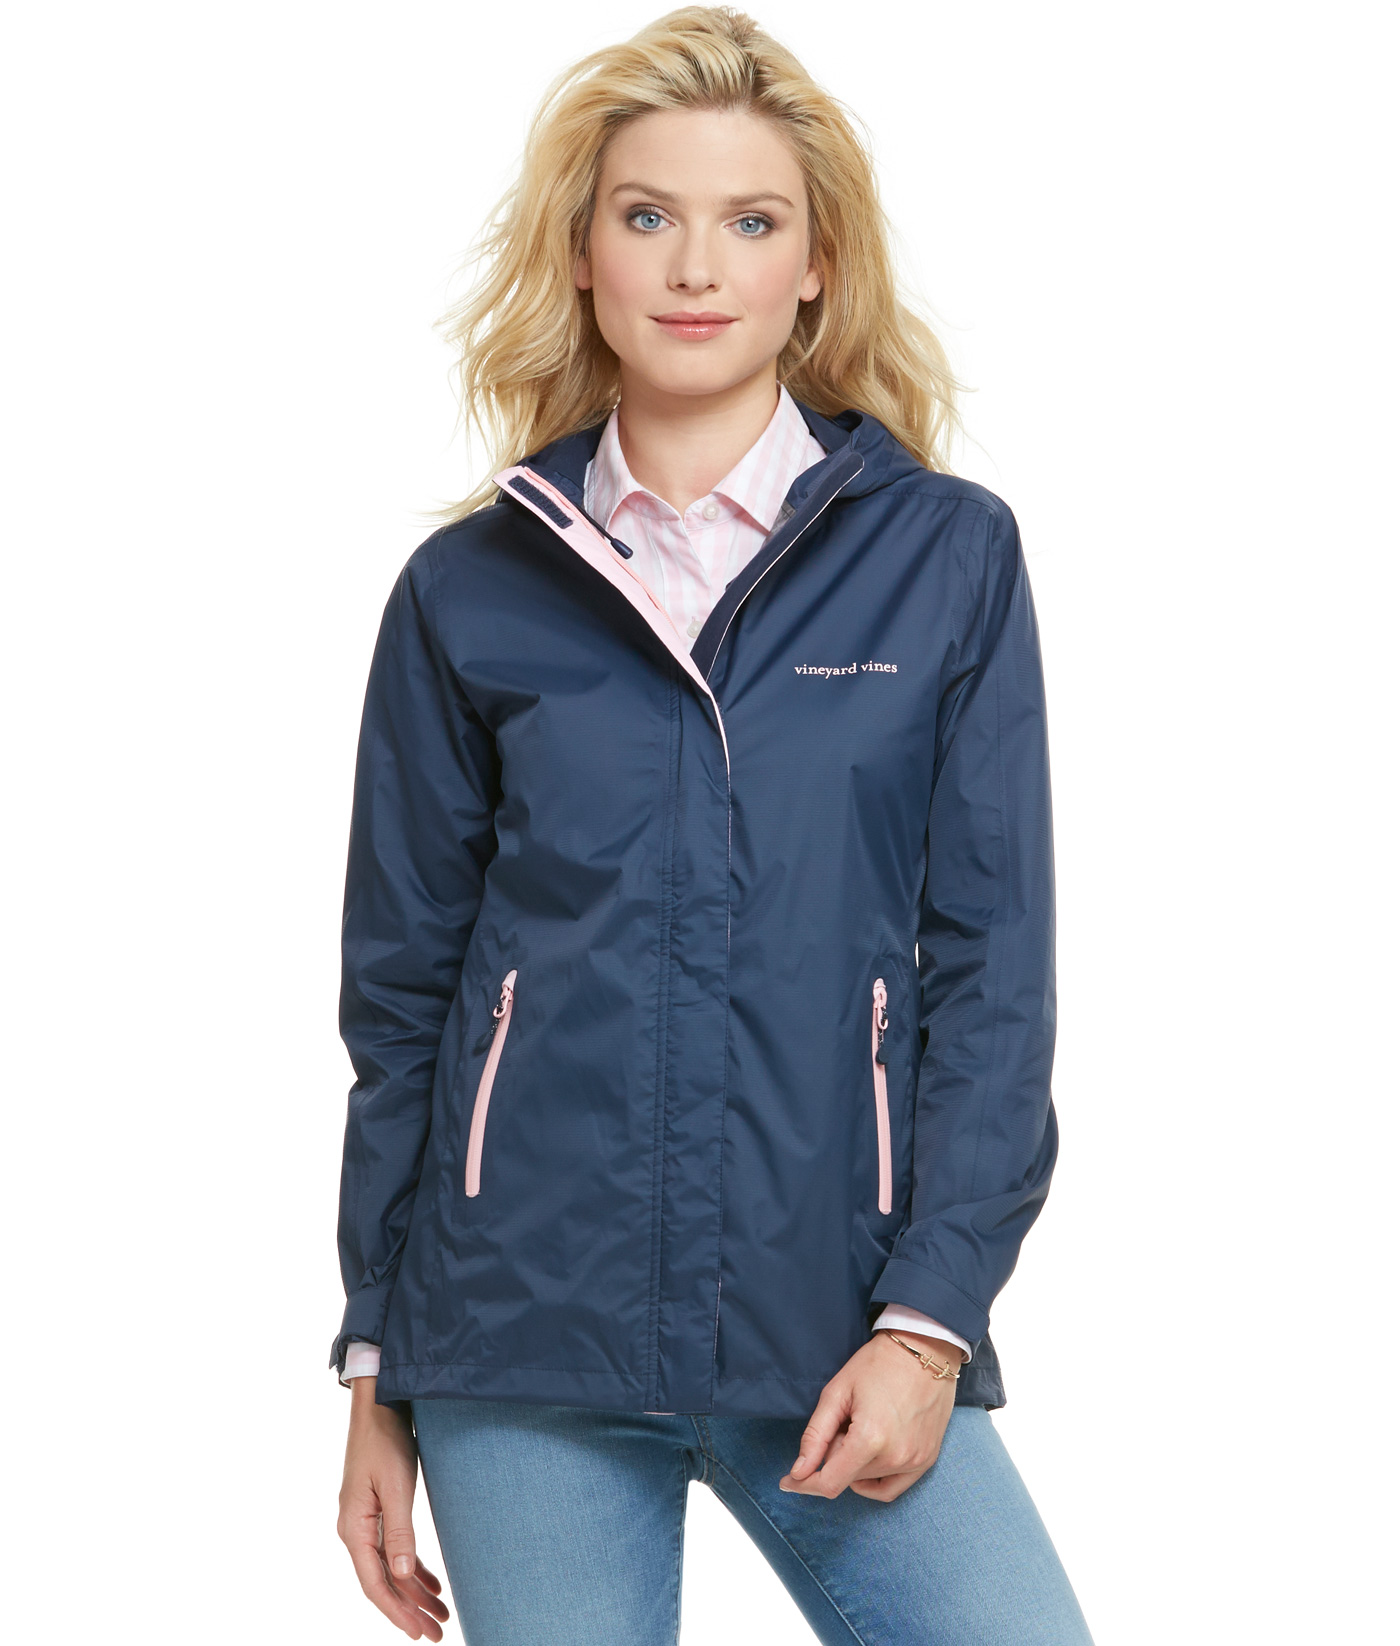 Vineyard Vines Women's 3 in 1 Rain Jacket Jacket Vest Crystal Blue $248.00 NWT